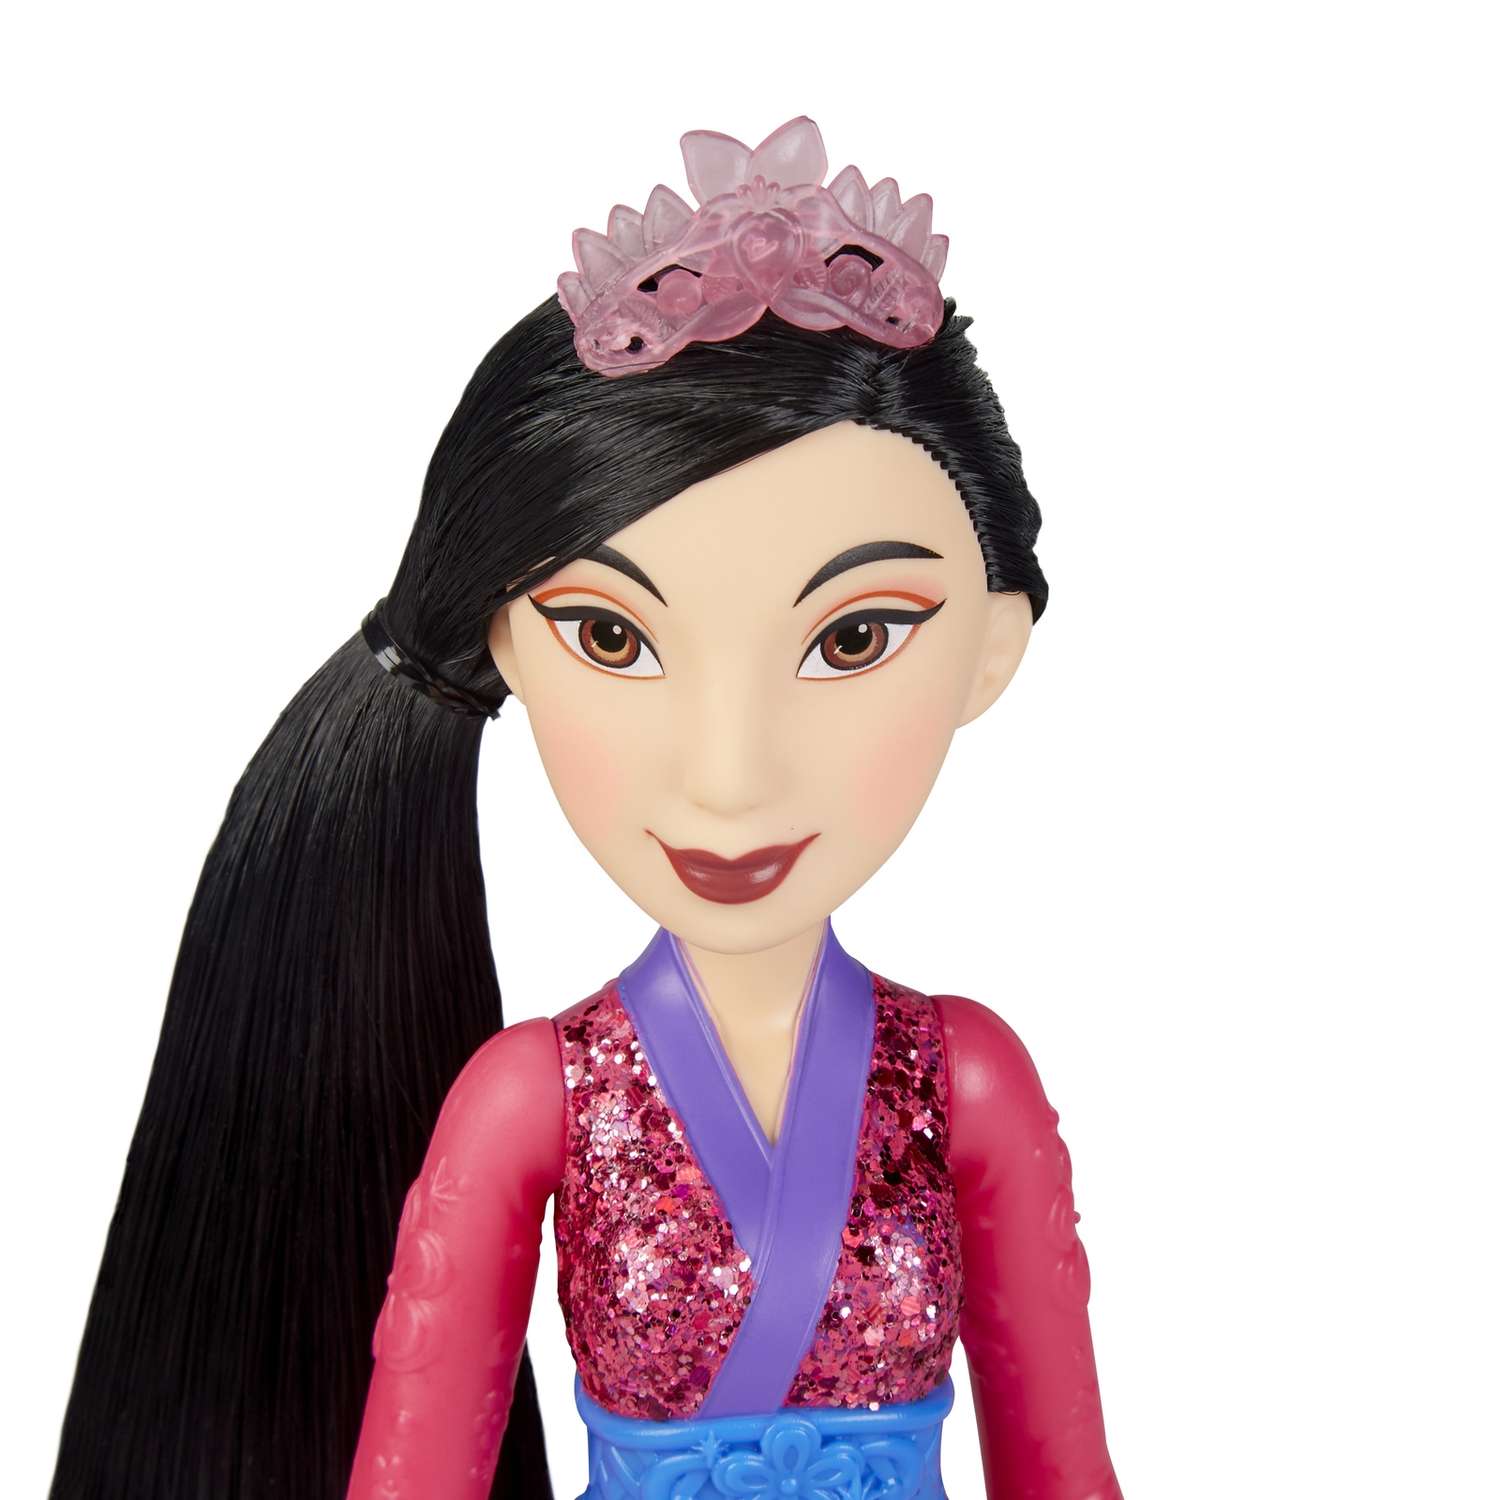 Кукла Disney Princess Hasbro C Мулан E4167EU4 E4022EU4 - фото 9